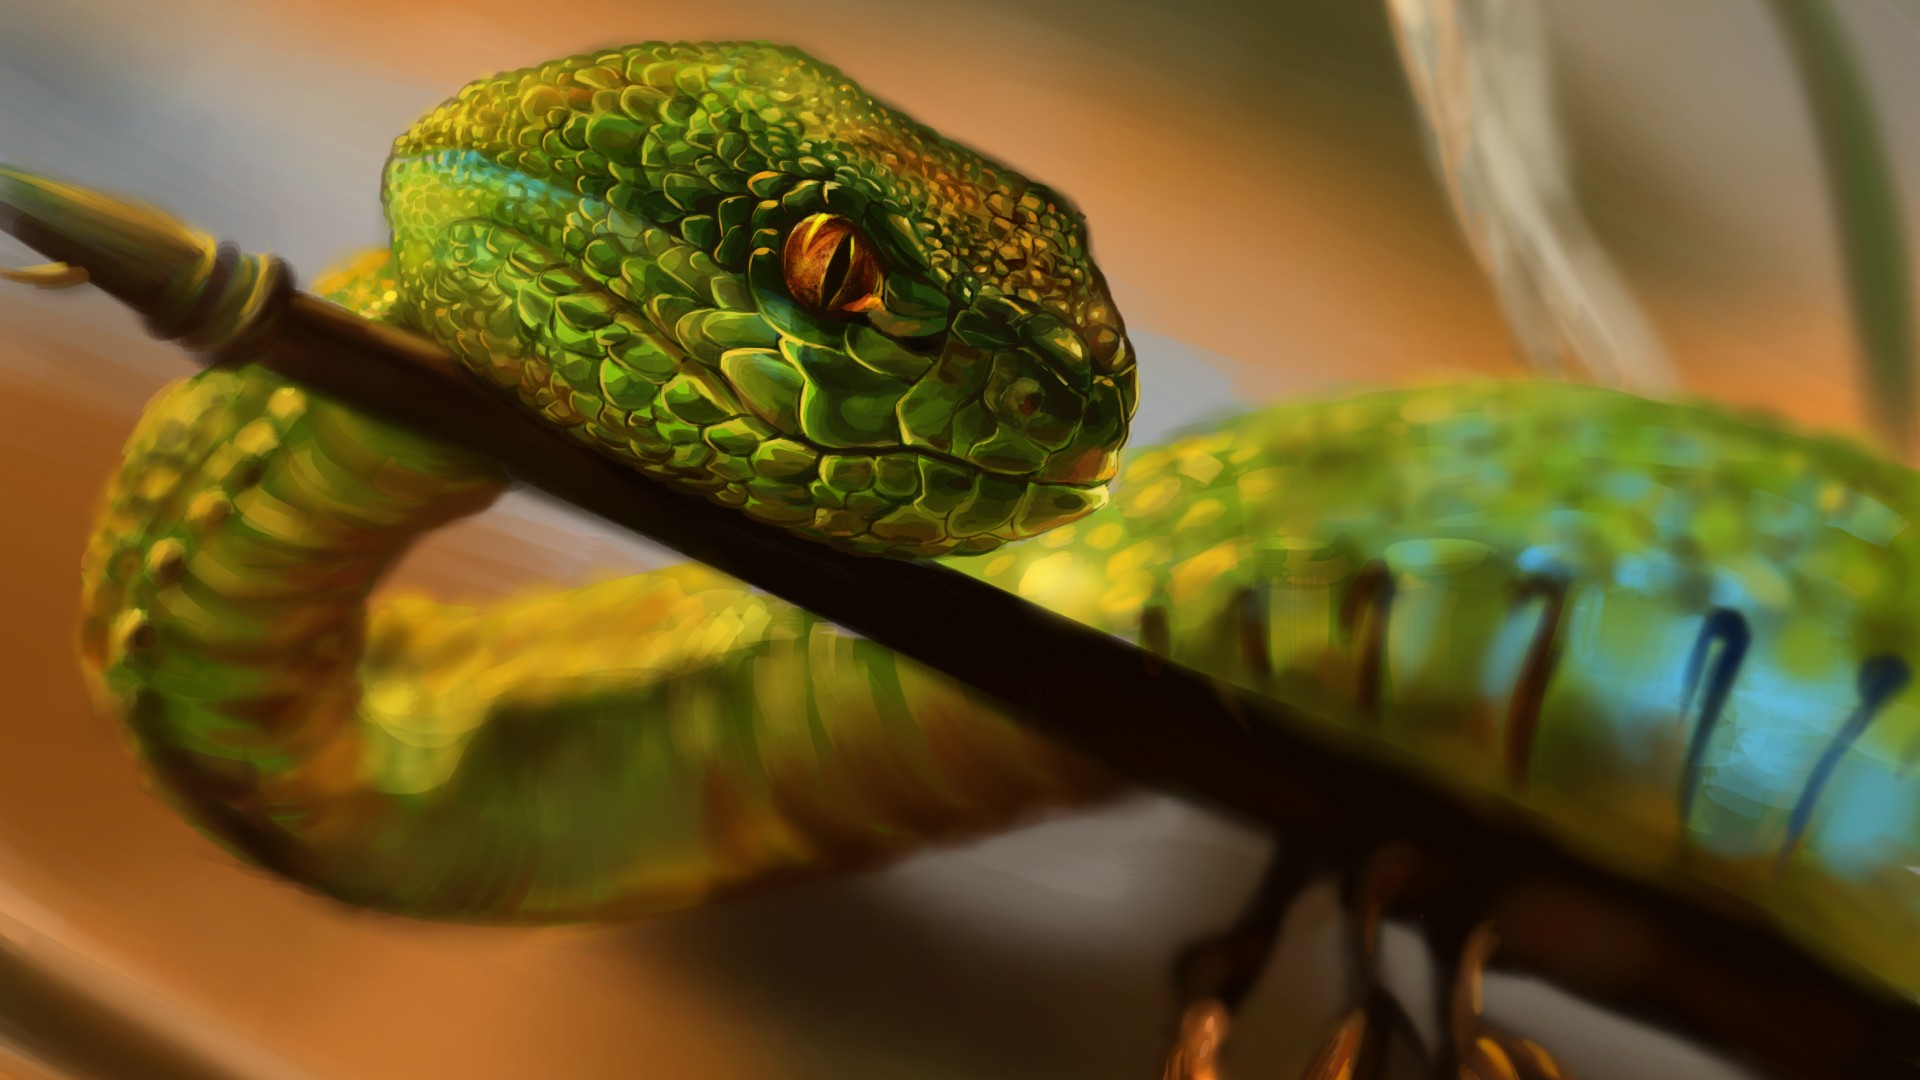 Змея, зеленая, глаза, рептилия, арт, Snake, green, reptile, eyes, art (horizontal)